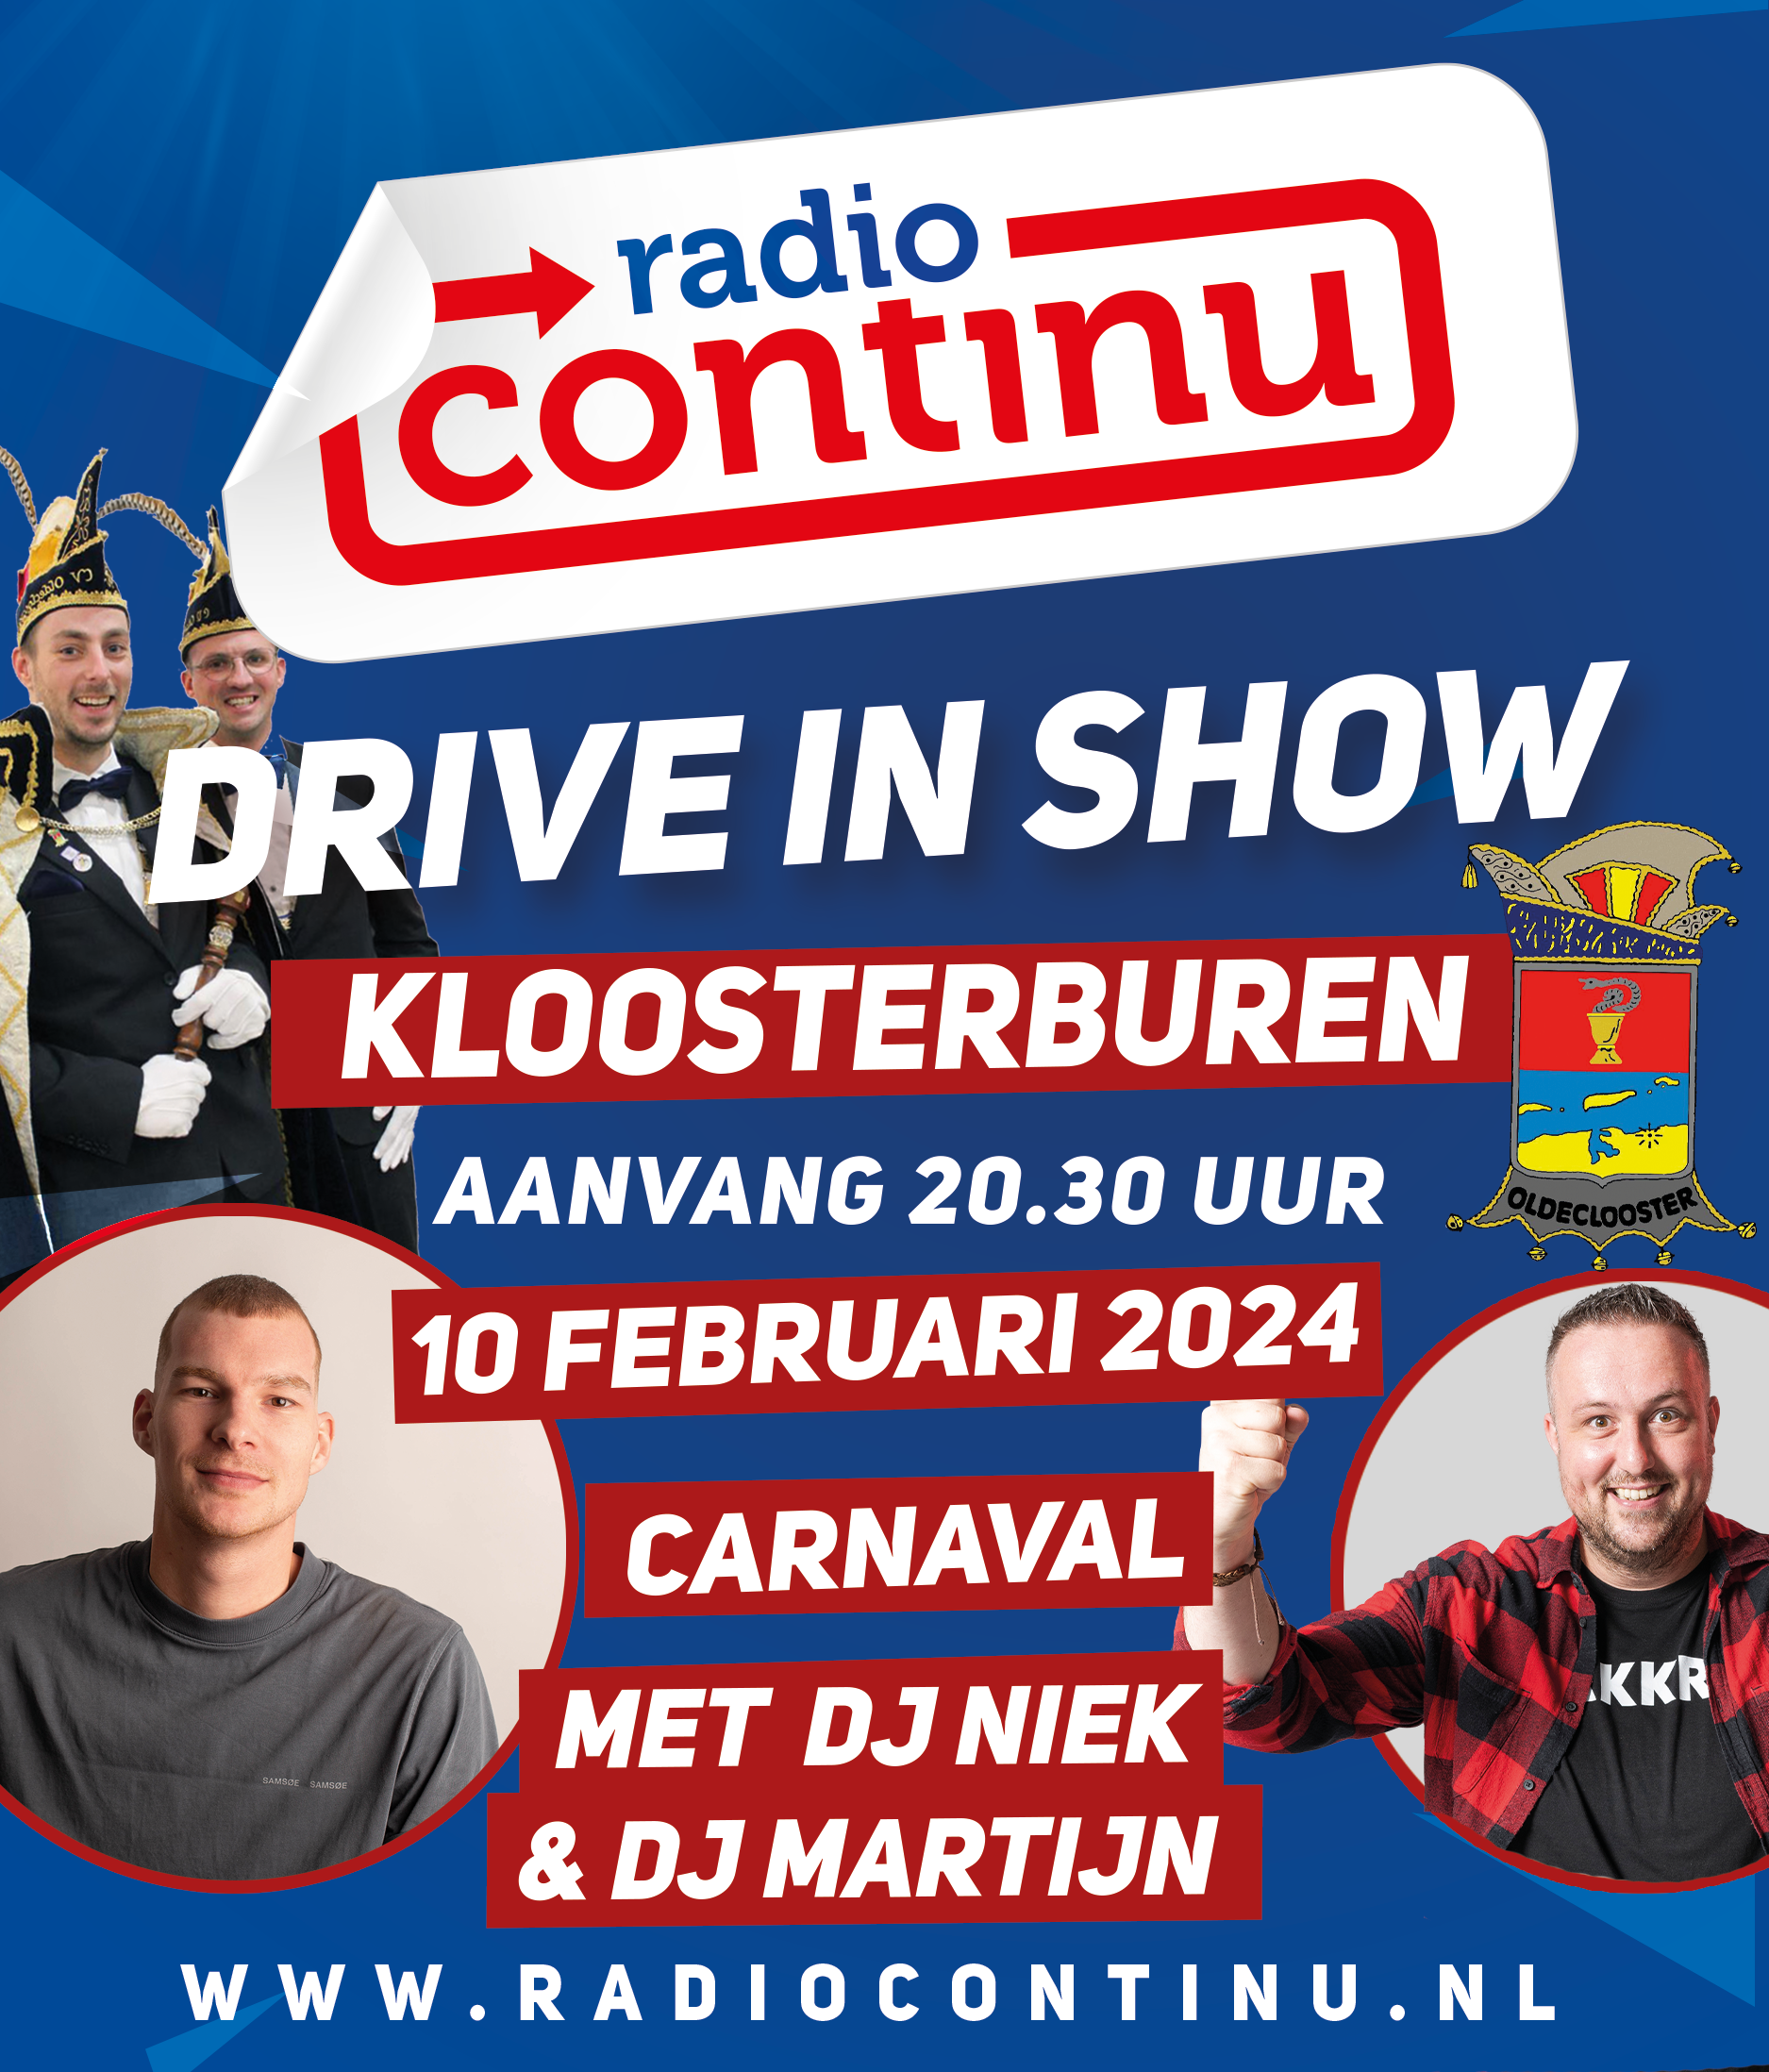 10-02-24: Drive in show Kloosterburen